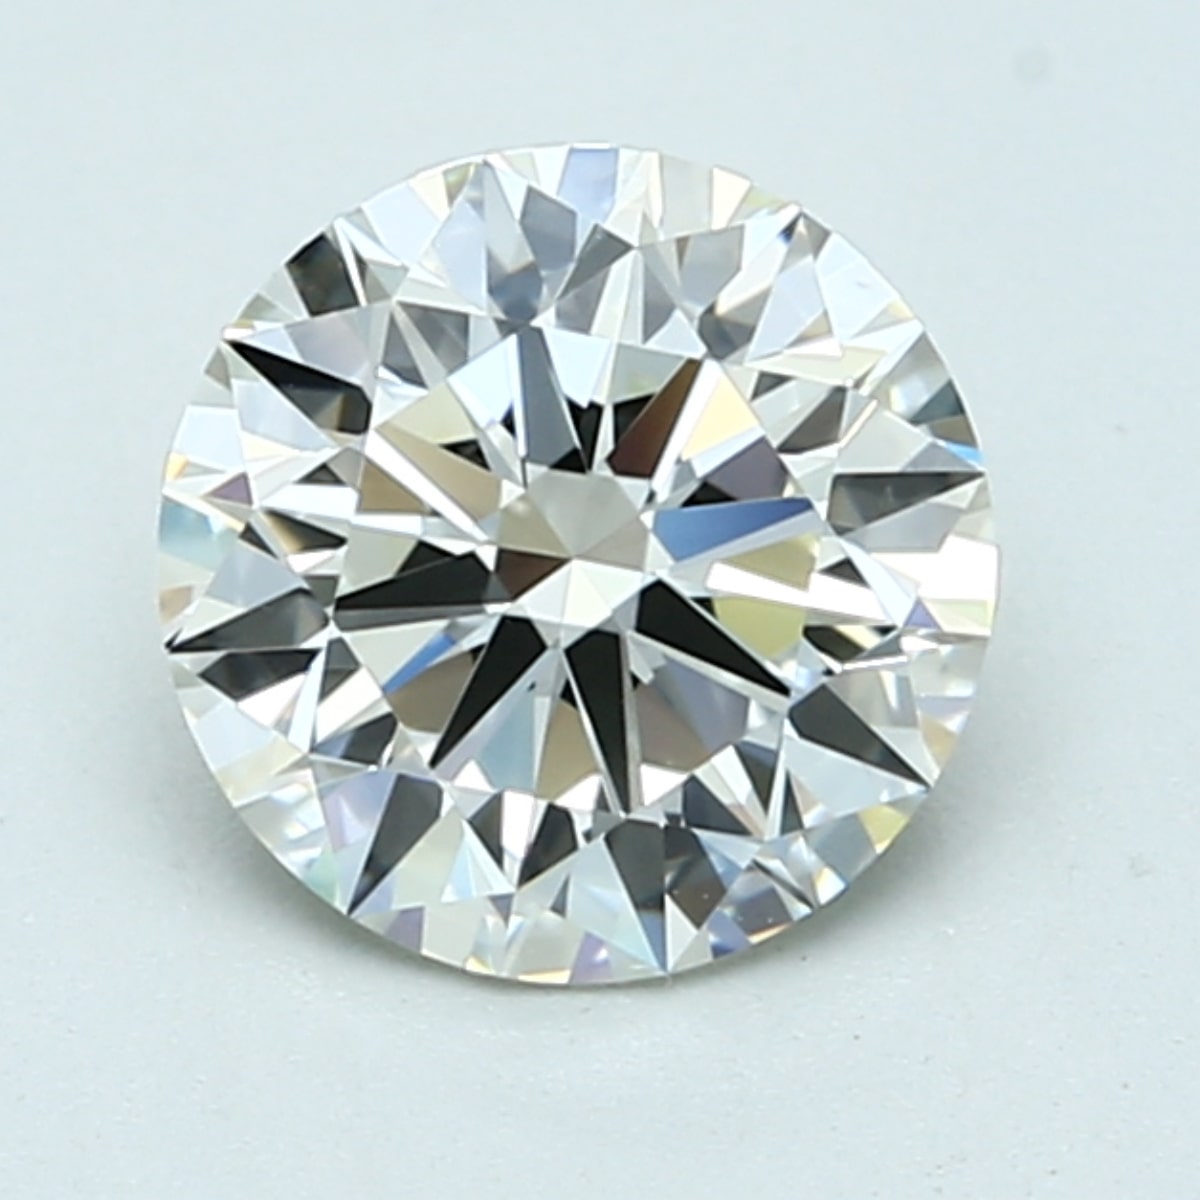 1.5 carat K color diamond